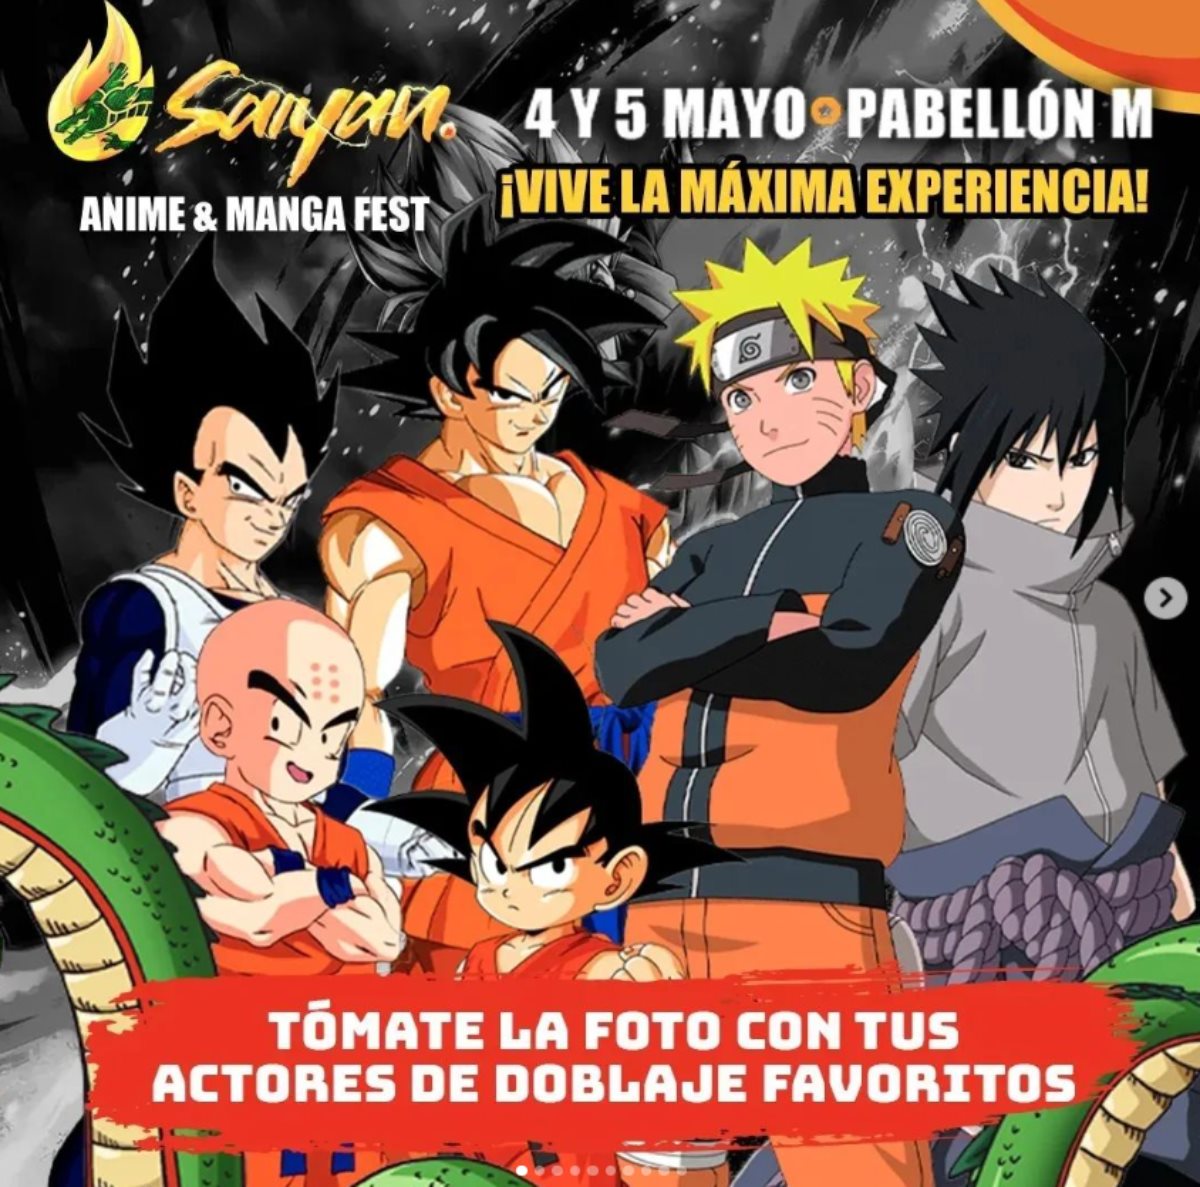 El Saiyan Fest Monterrey es para toda la familia. Foto IG @saiyanfest